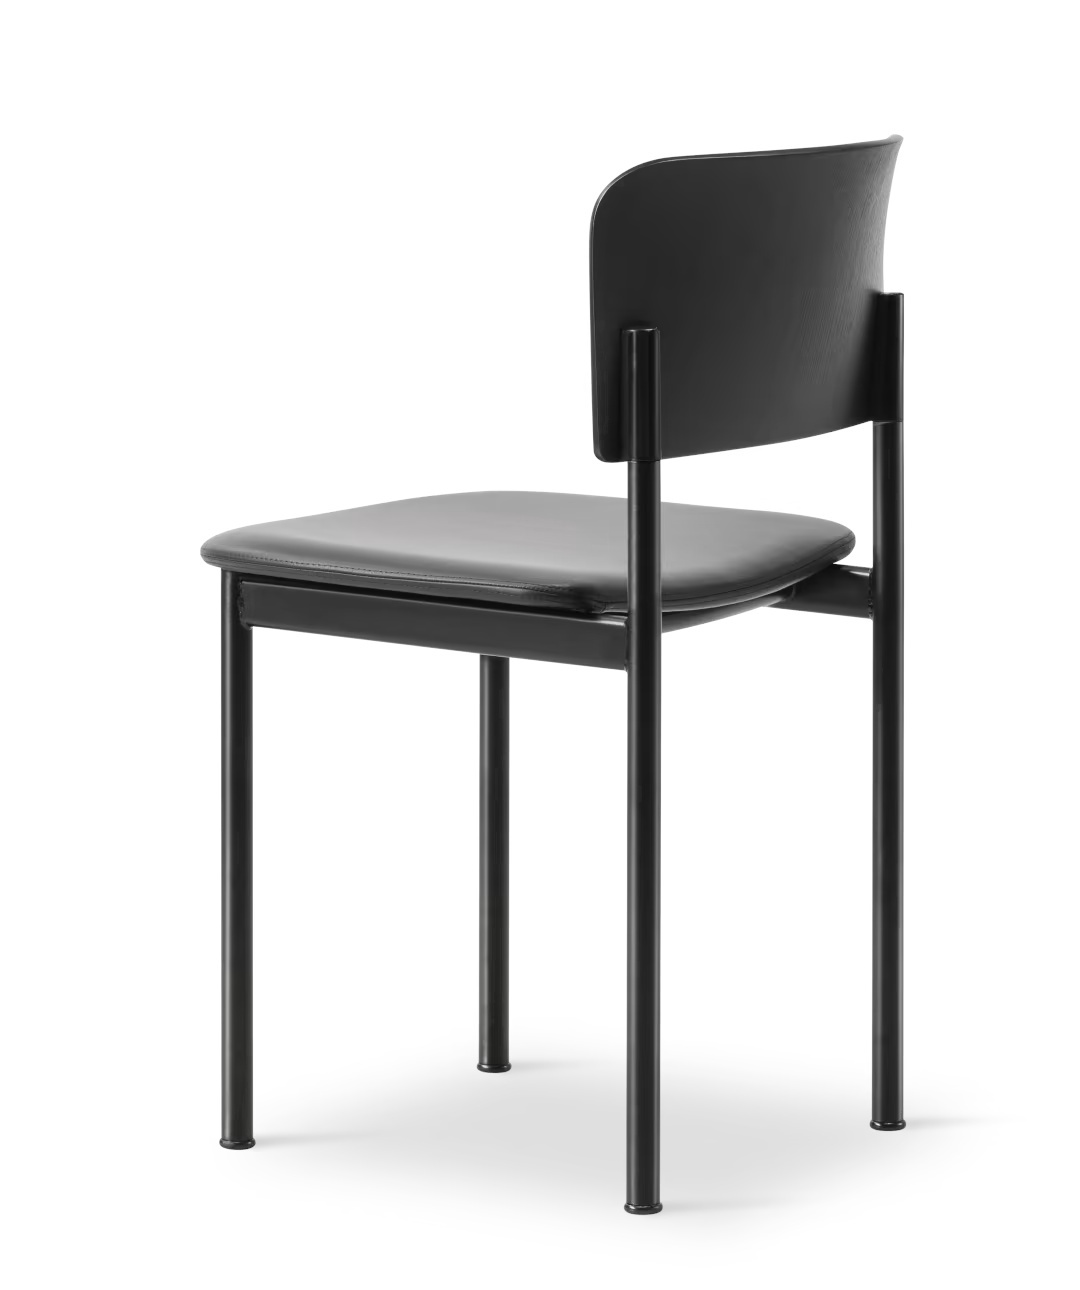 Plan Chair Sitz gepolstert, esche schwarz / leder omni 301 schwarz